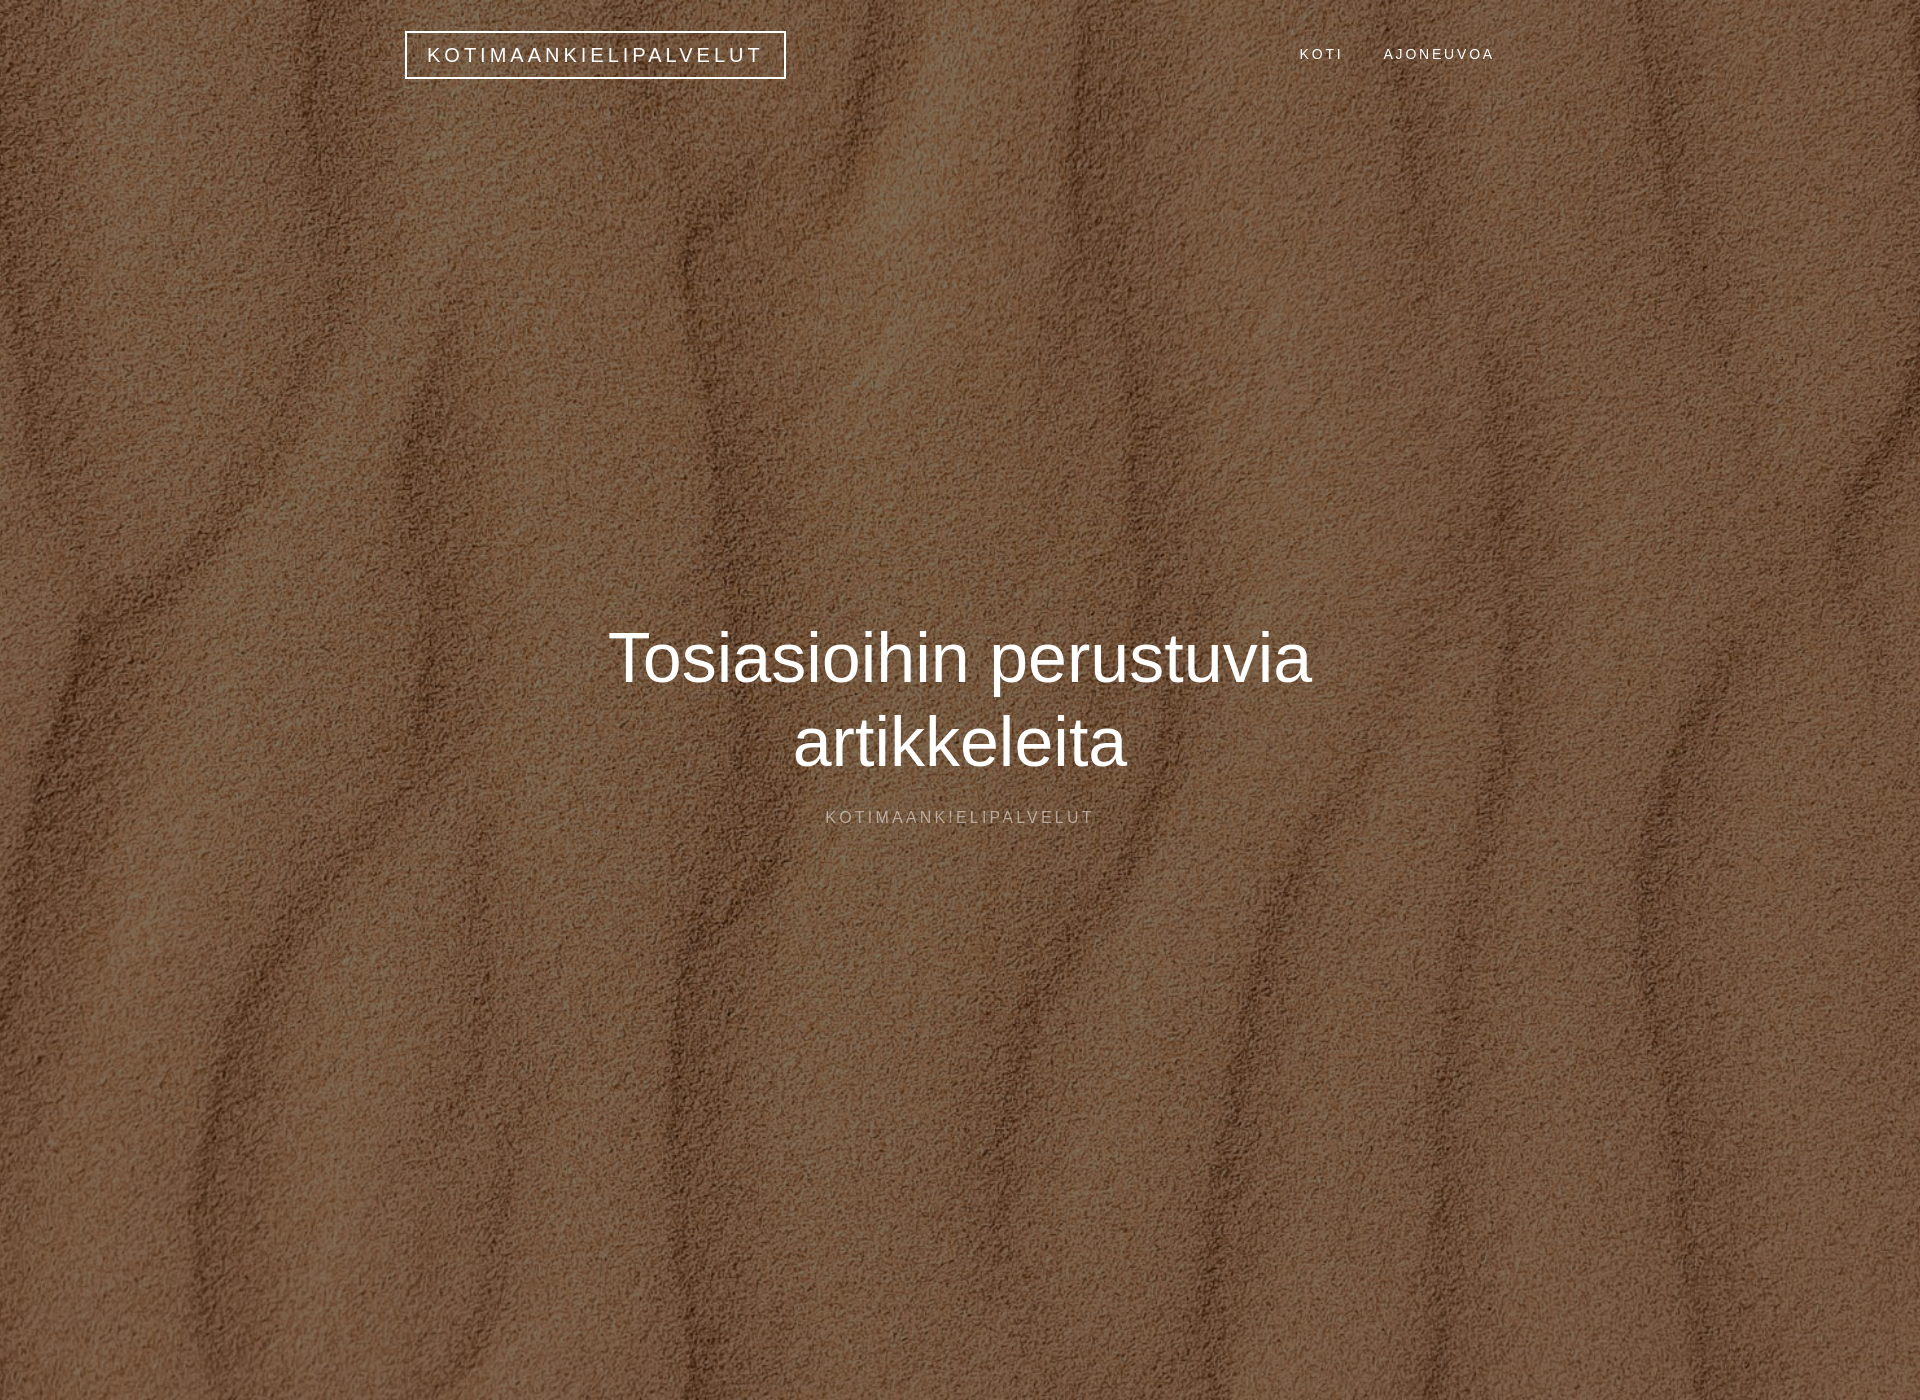 Screenshot for kotimaankielipalvelut.fi